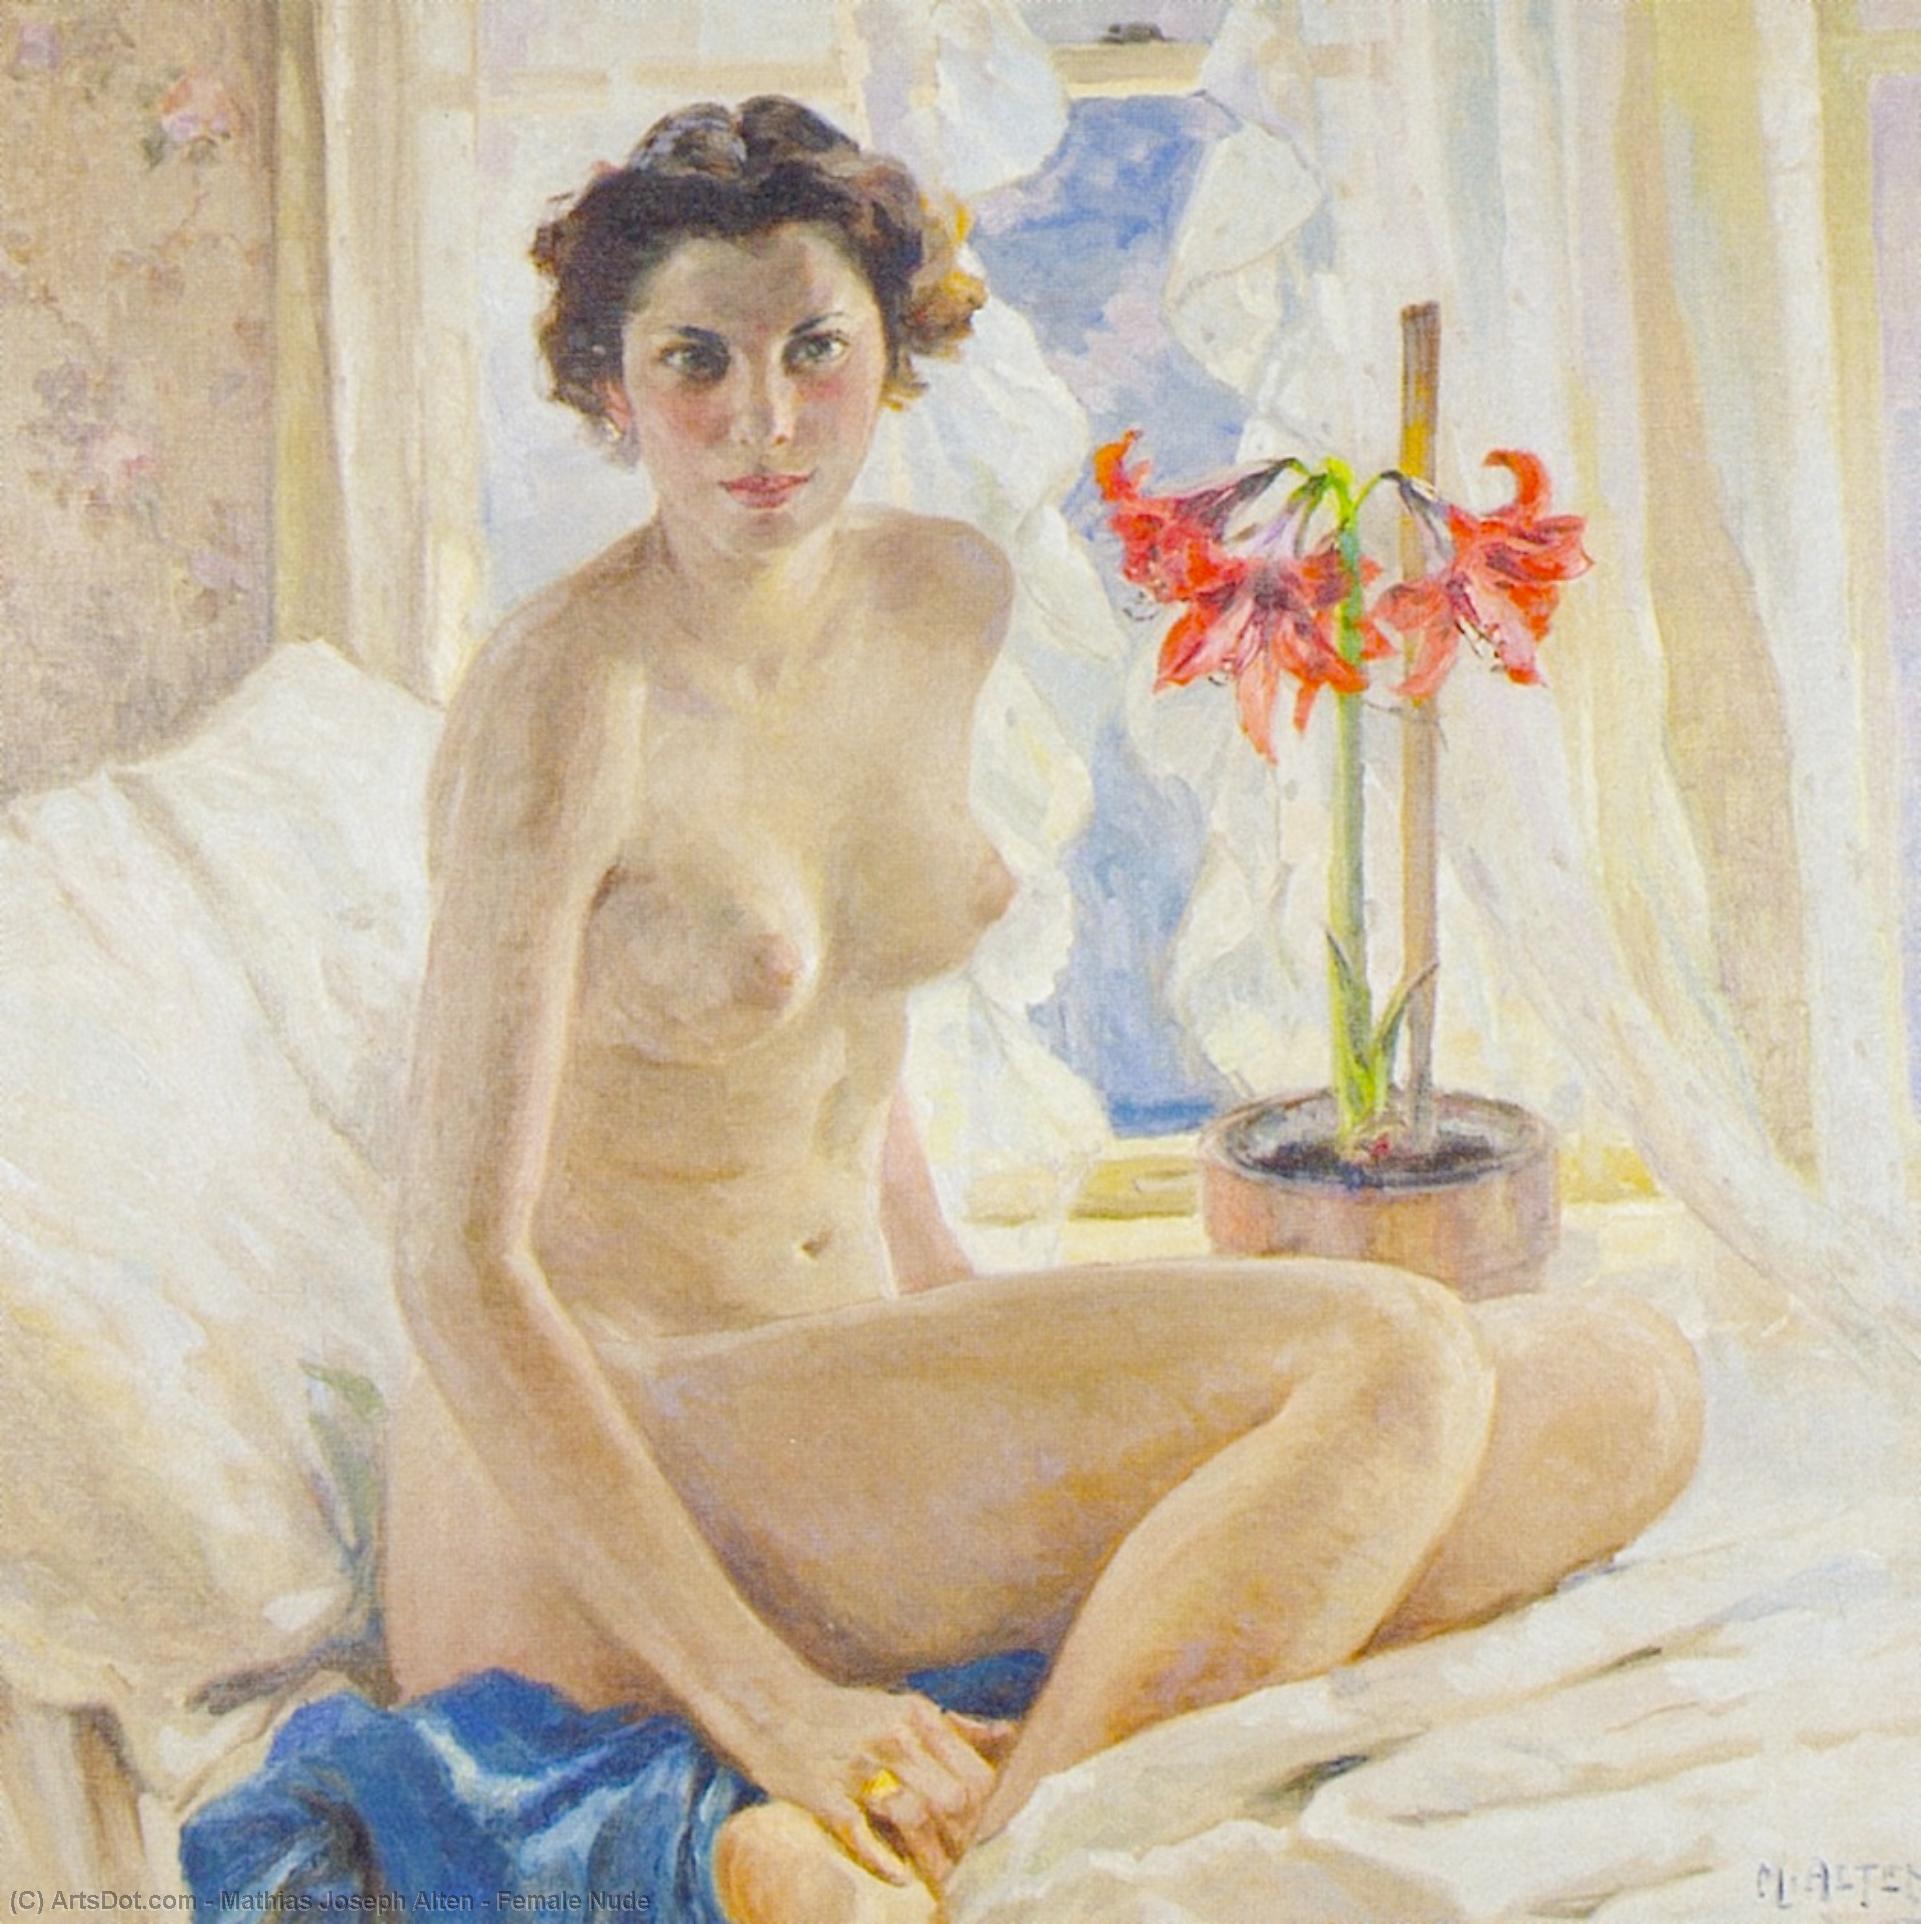 WikiOO.org - Güzel Sanatlar Ansiklopedisi - Resim, Resimler Mathias Joseph Alten - Female Nude